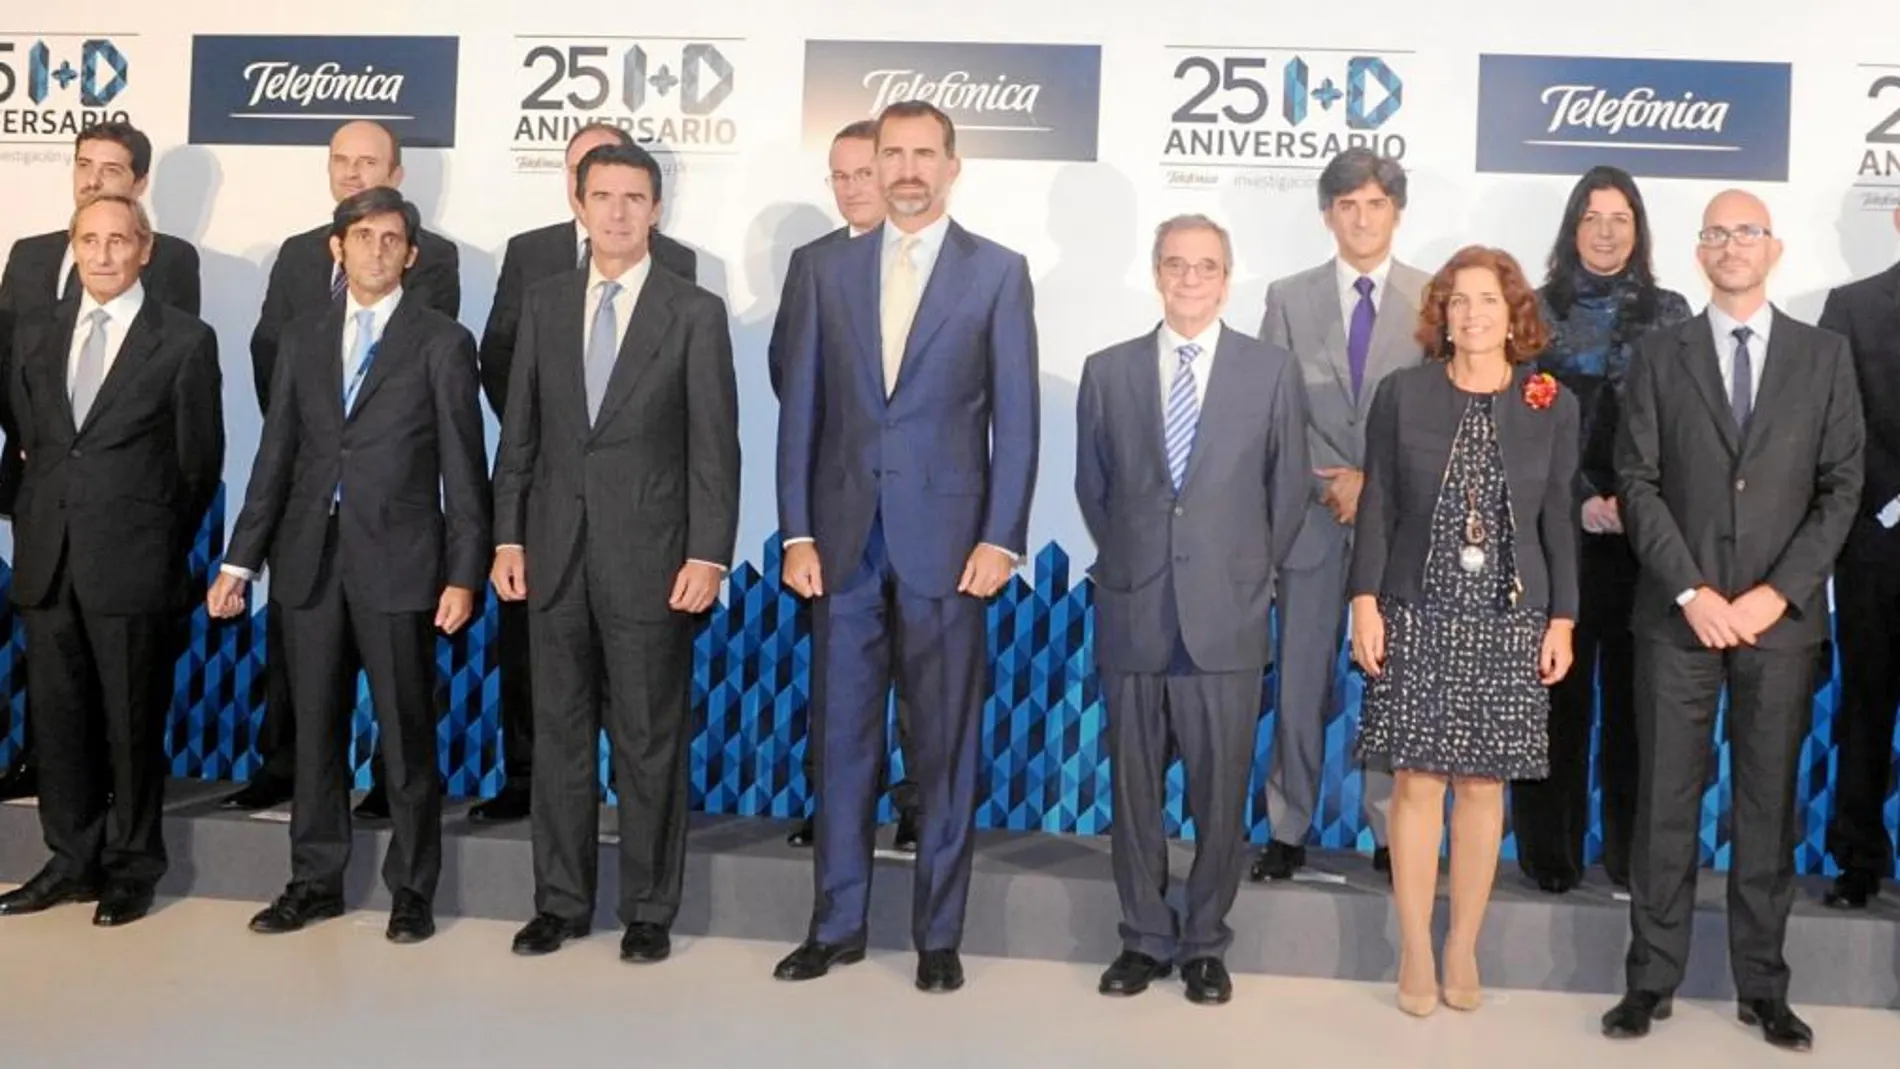 El Príncipe Felipe asistió al aniversario de TI+D, acompañado porJosé Manuel Soria, César Alierta, Ana Botella y Carlos Domingo, entre otros